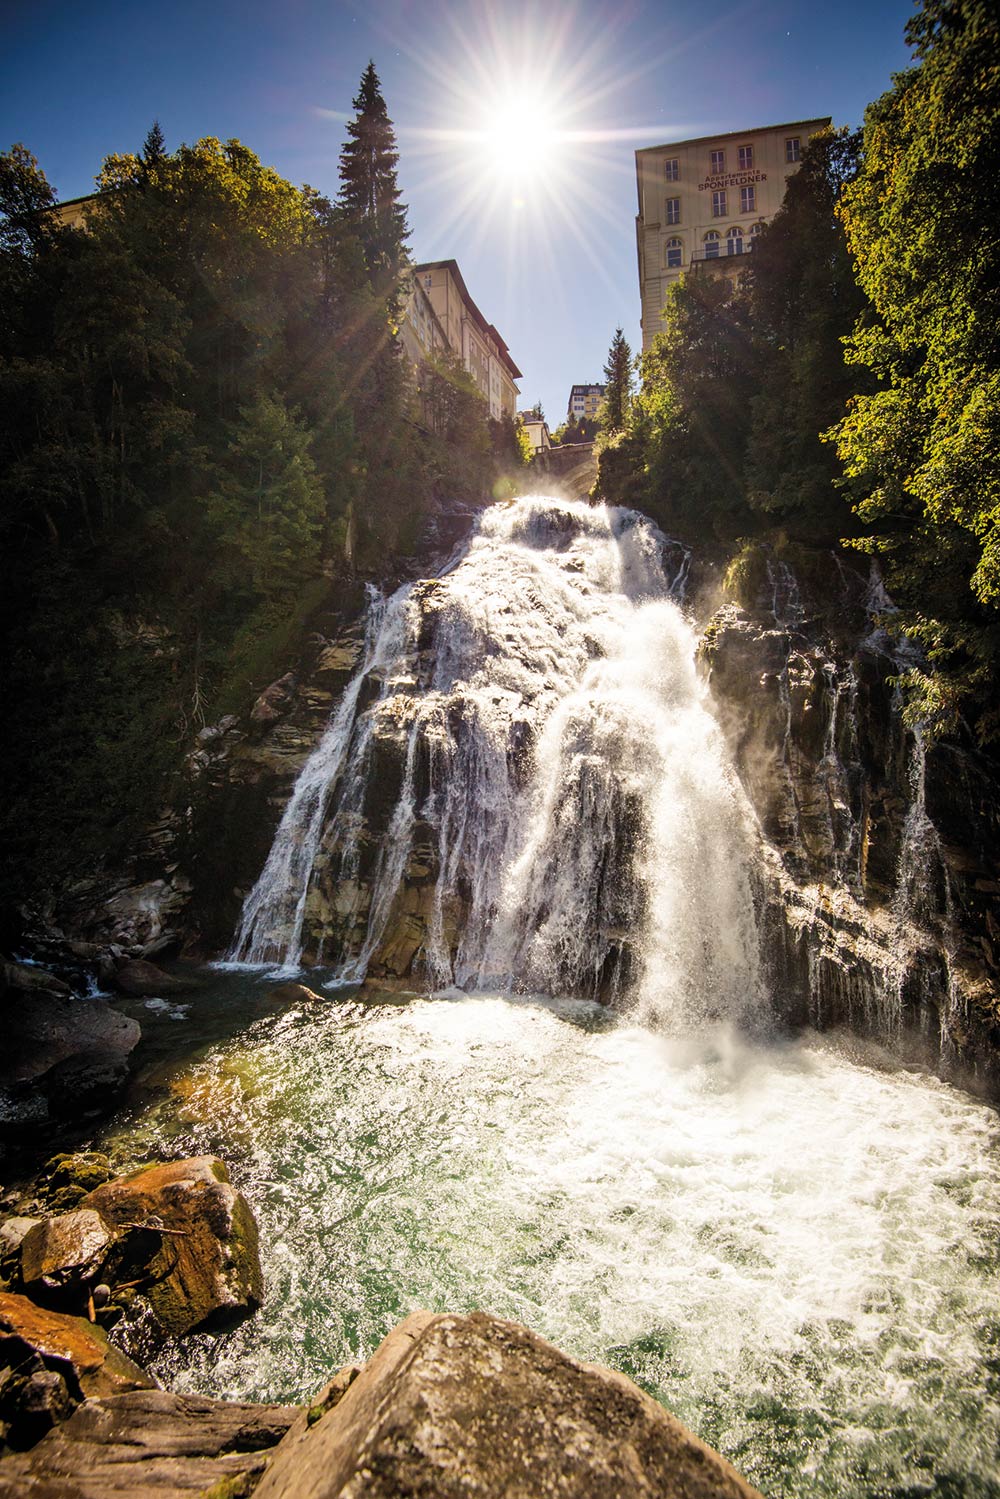 Gasteiner Wasserfall im Zentrum von Bad Gastein